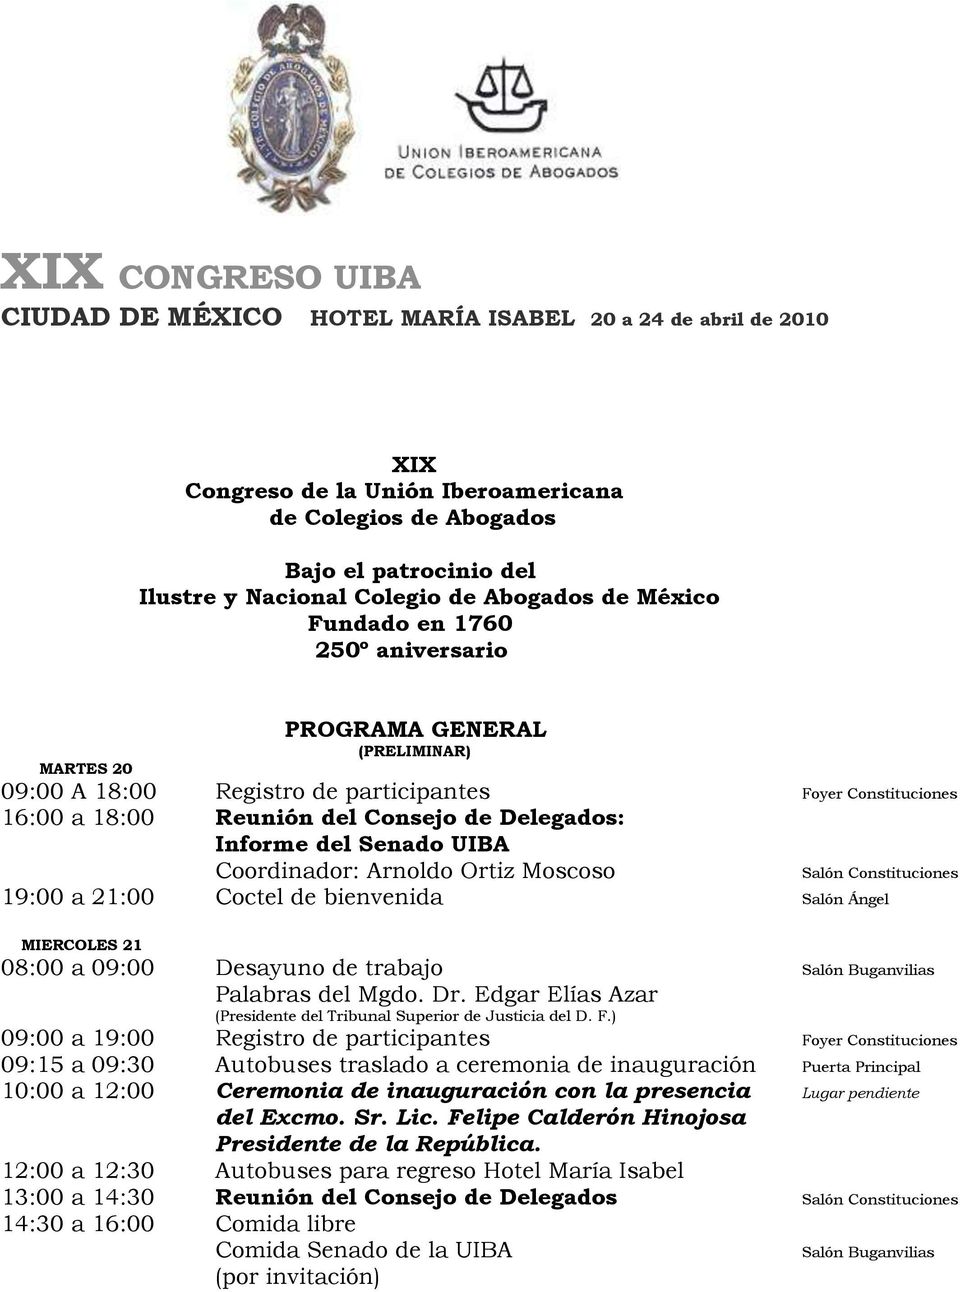 Delegados: Informe del Senado UIBA Coordinador: Arnoldo Ortiz Moscoso Salón Constituciones 19:00 a 21:00 Coctel de bienvenida Salón Ángel MIERCOLES 21 08:00 a 09:00 Desayuno de trabajo Salón